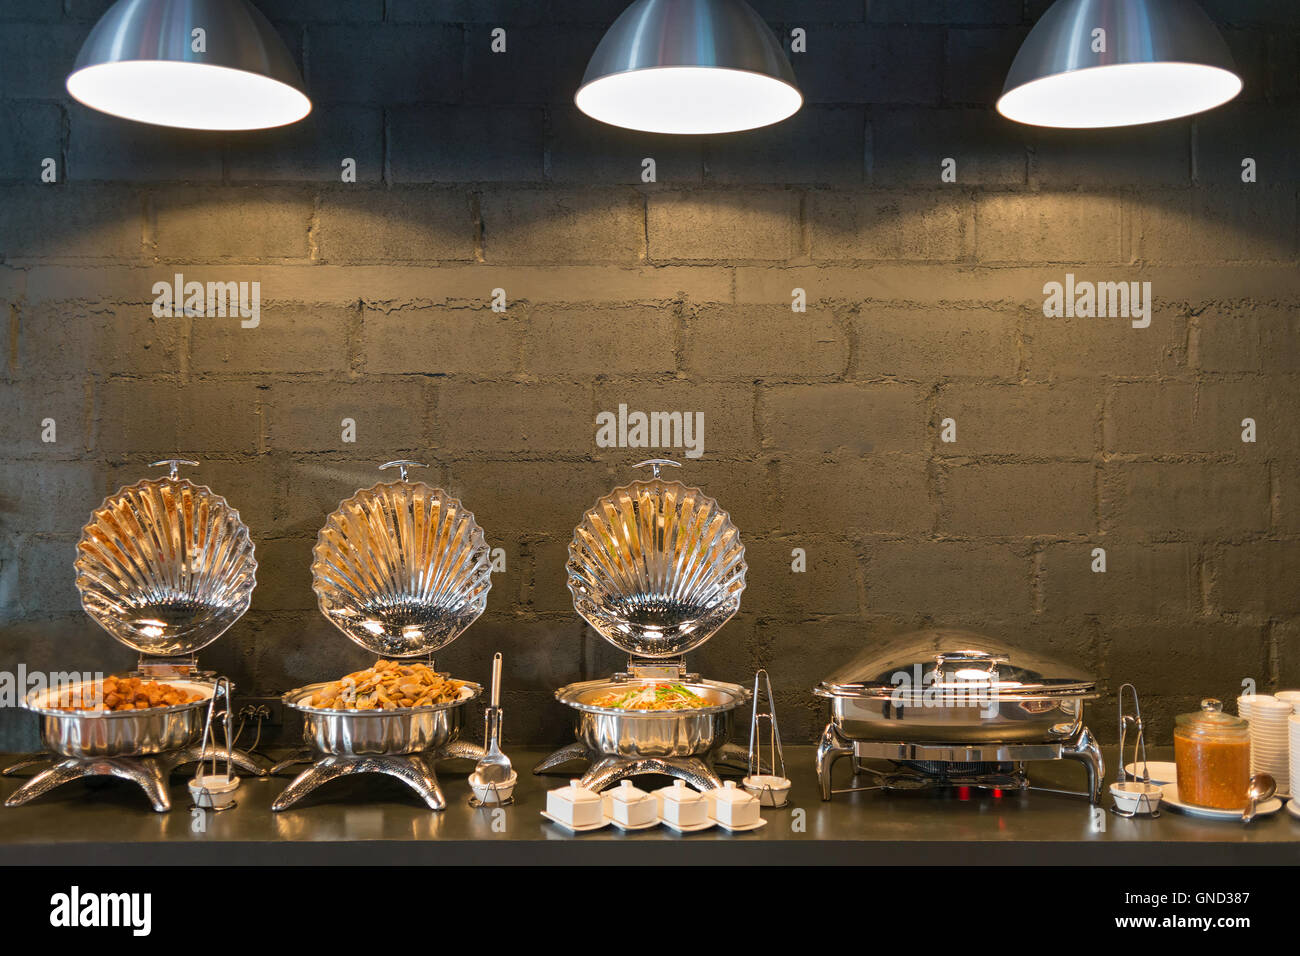 Büffet Linie Essen Container geformte Schalen mit drei Beleuchtung und dunklen Ziegel Wand Hintergrund. Stockfoto